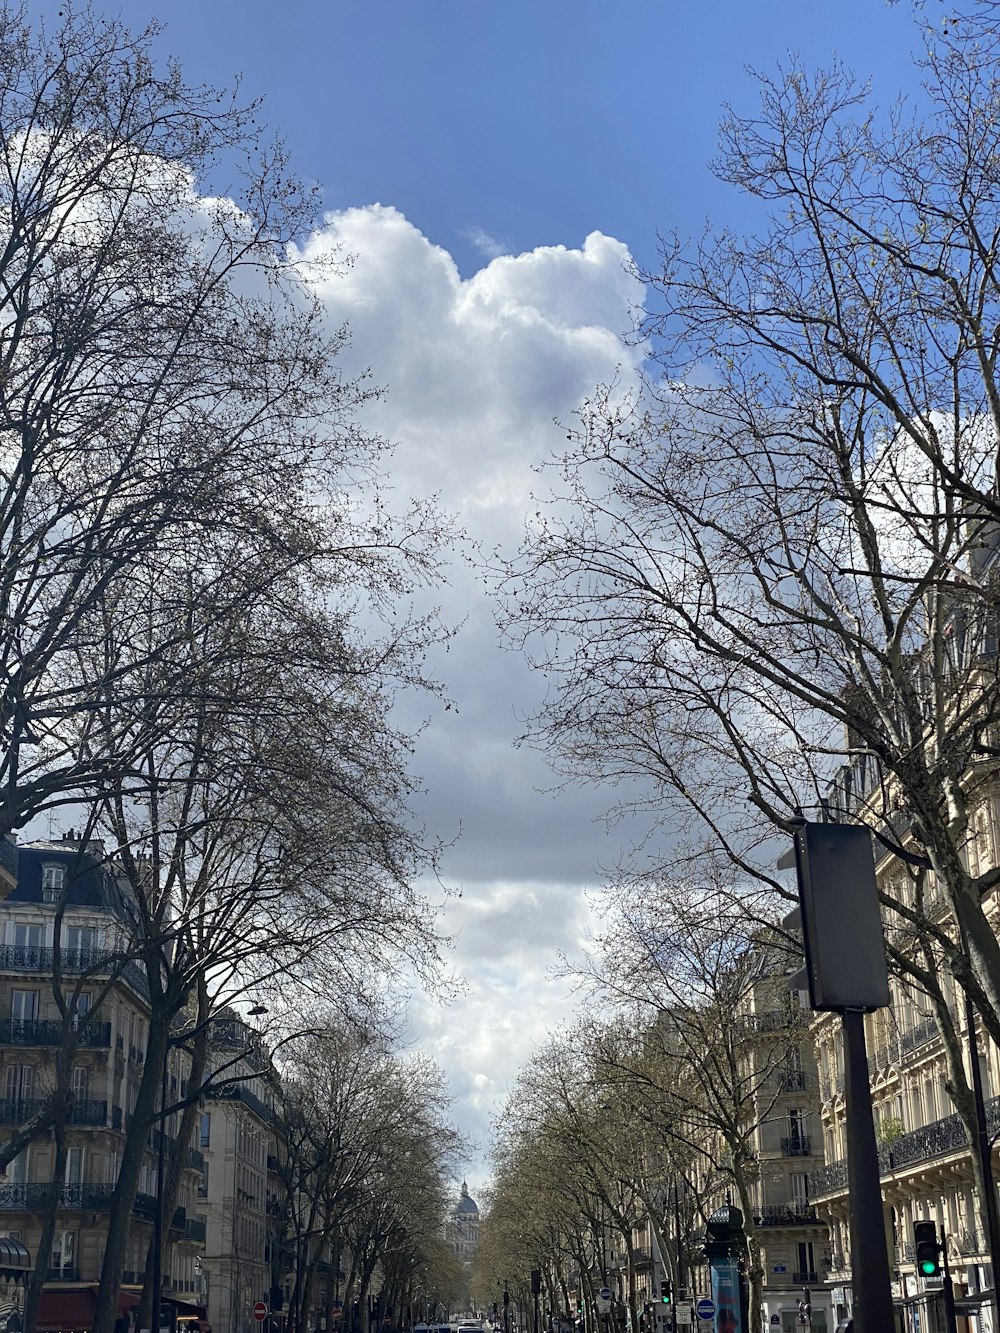 une rue bordée d’arbres et de bâtiments sous un ciel nuageux